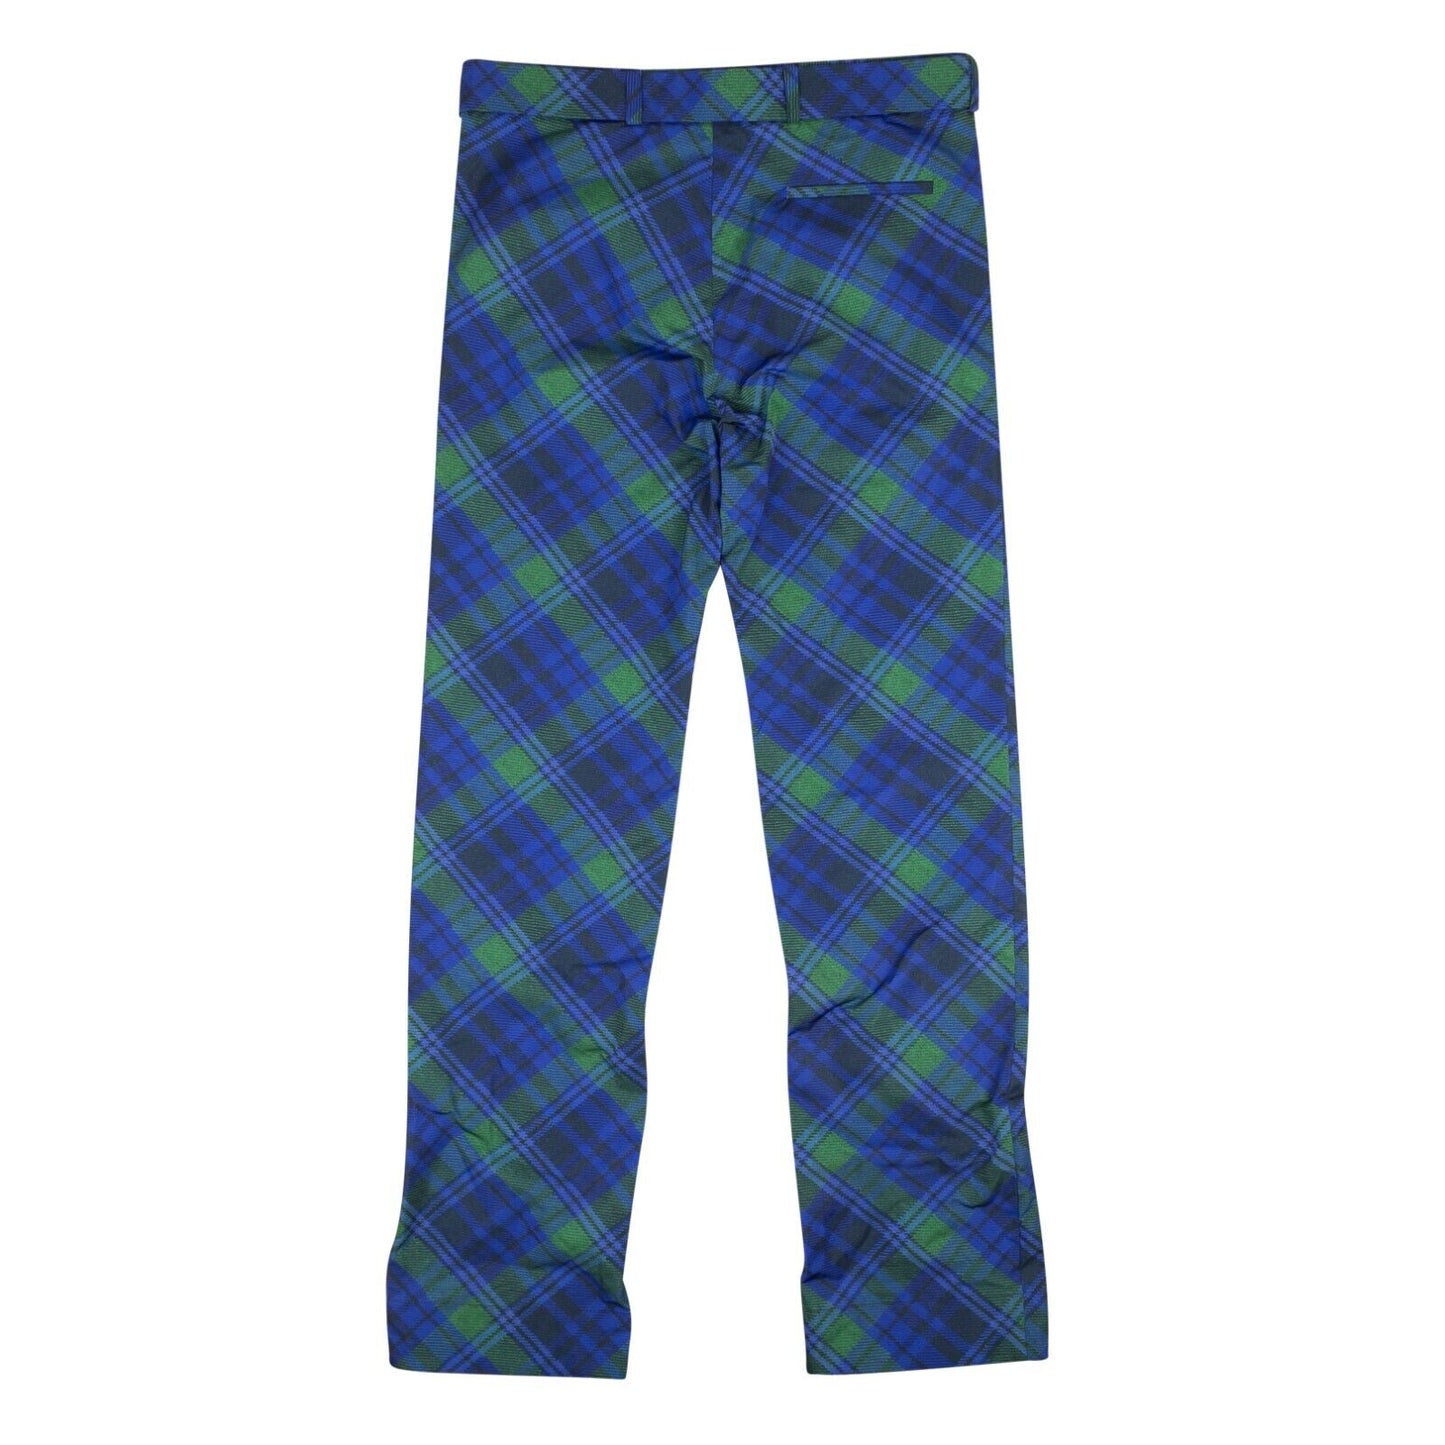 Stefan Cooke Studded Tartan Print Trousers - Blue/Green